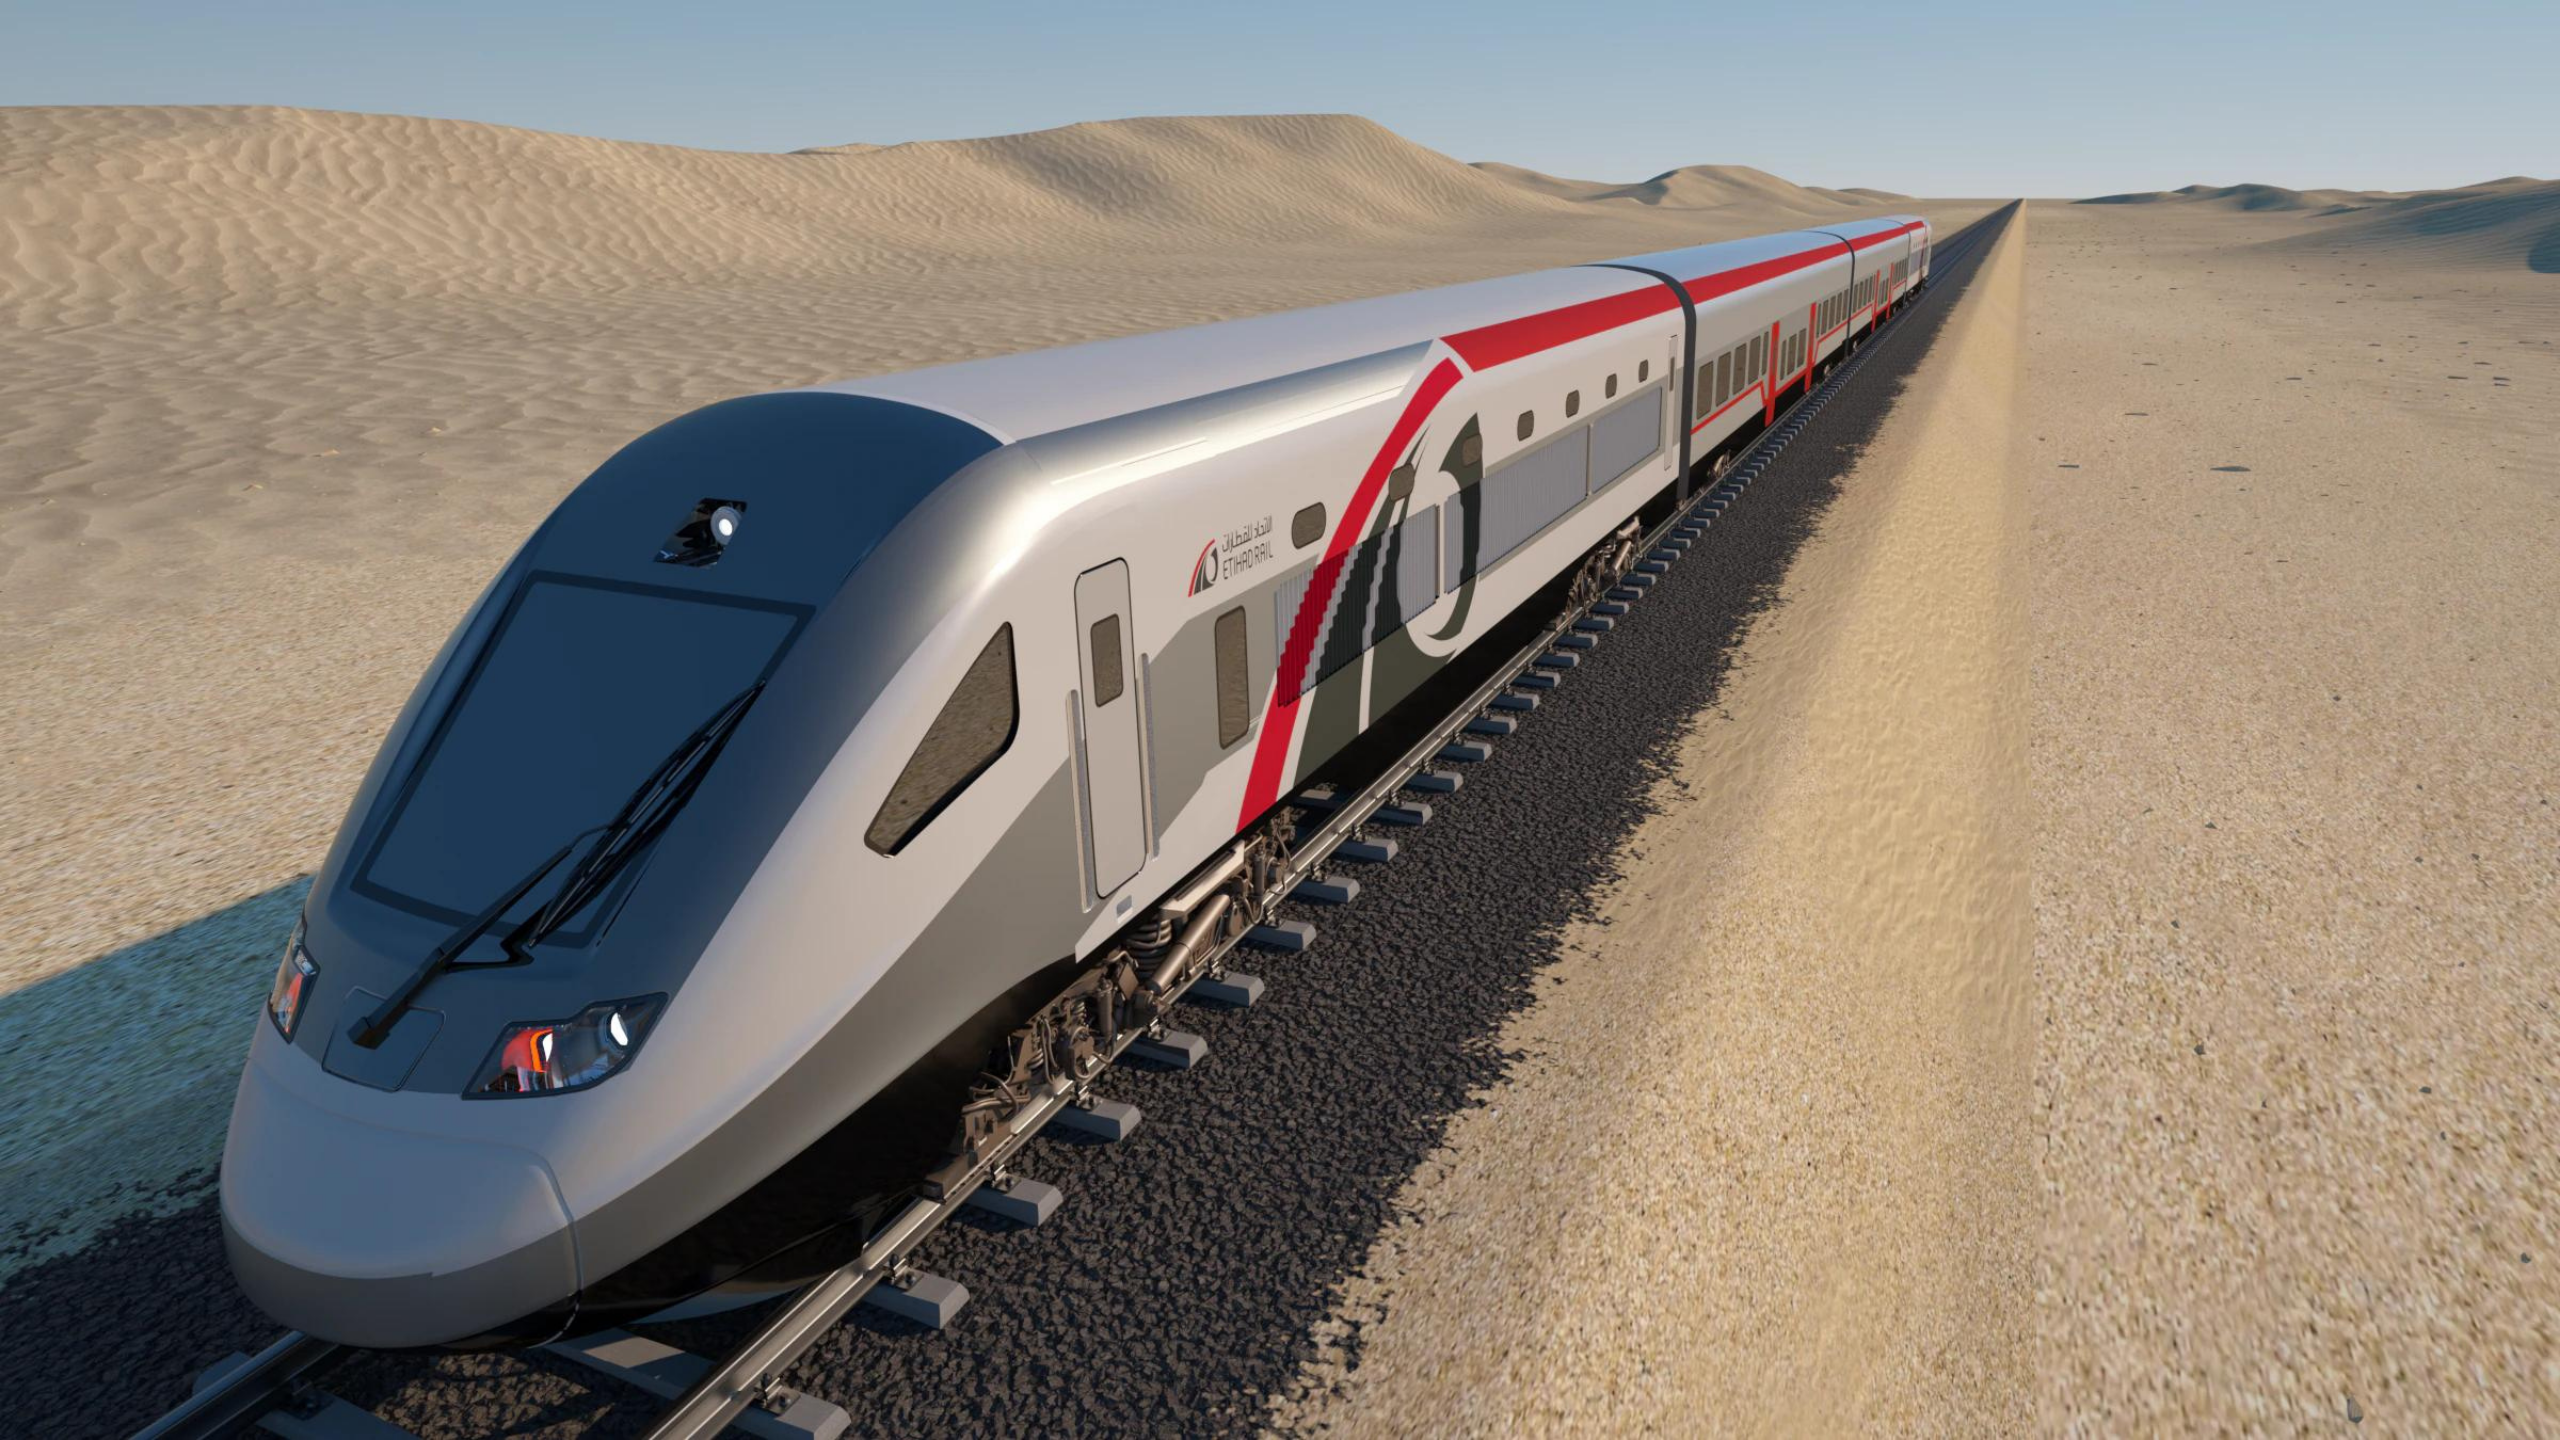 Рендер поезда, который планируется запустить линии протяженностью 145 км, соединяющей 11 крупных городов ОАЭ